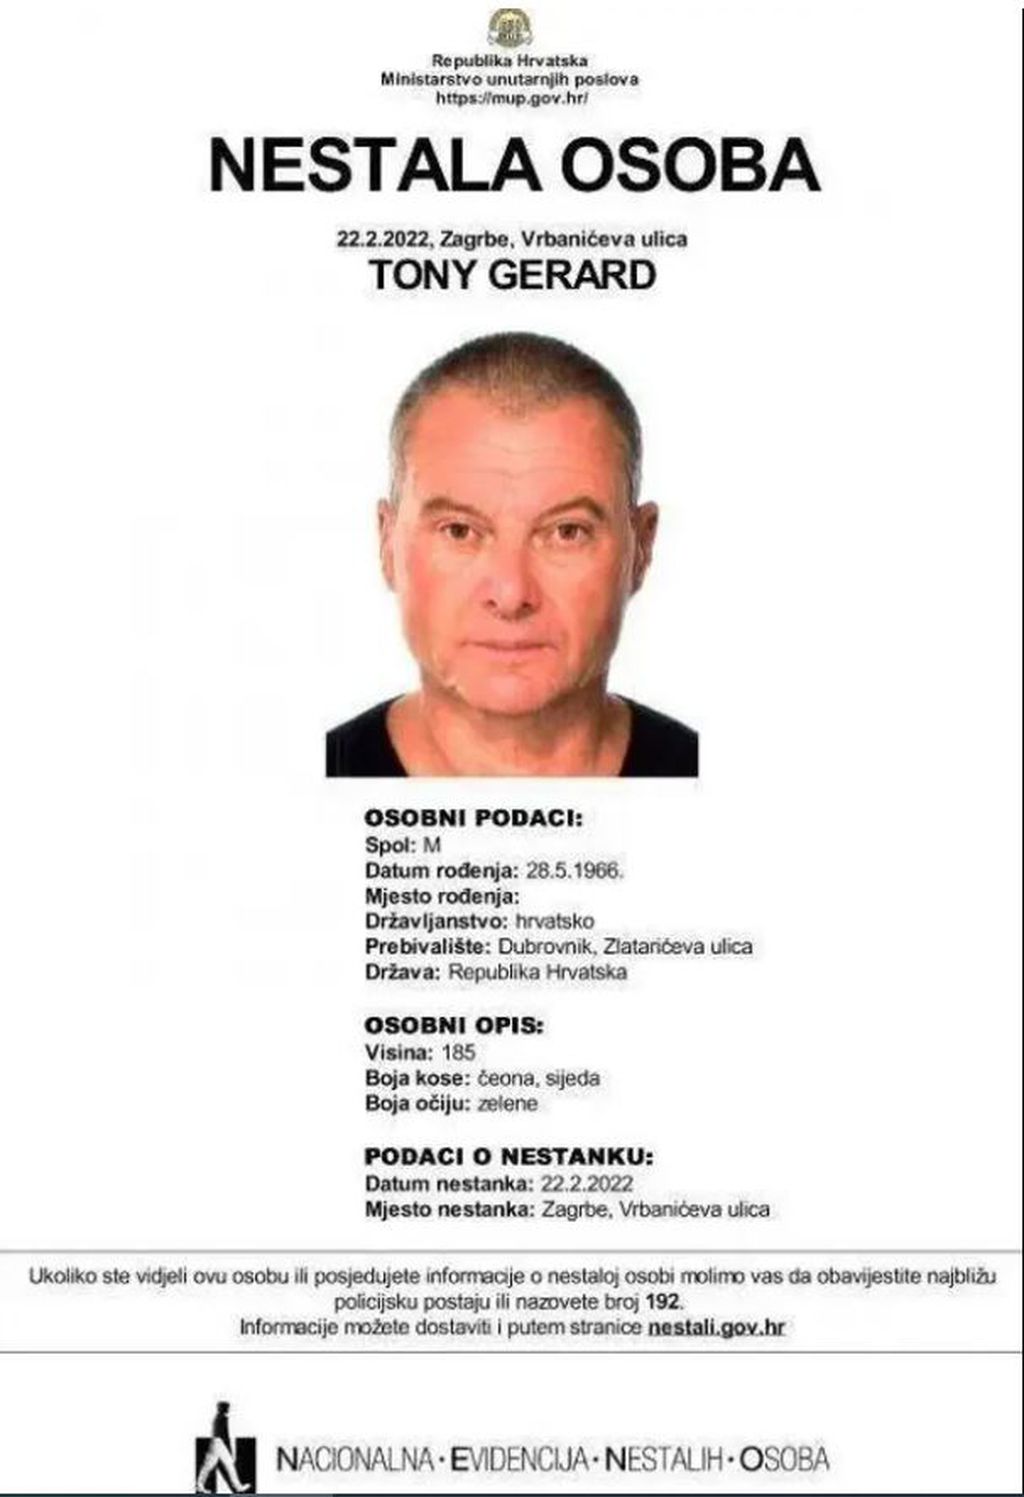 Tony Gerard